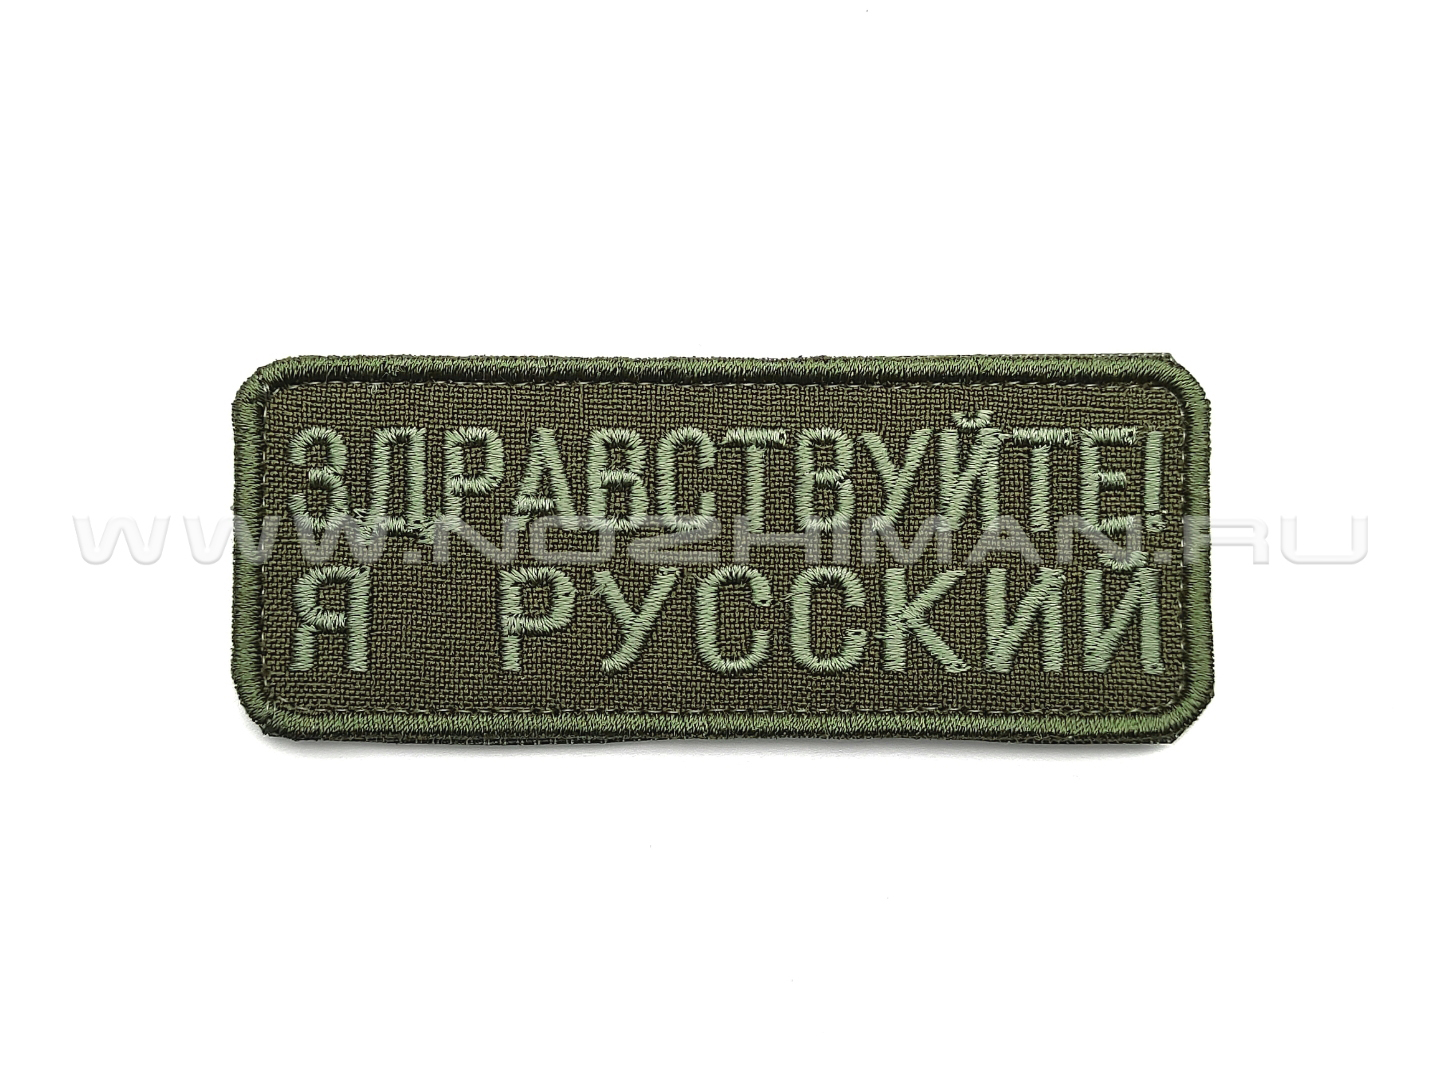 Патч П-377 "Здравствуйте я русский" зеленый текст